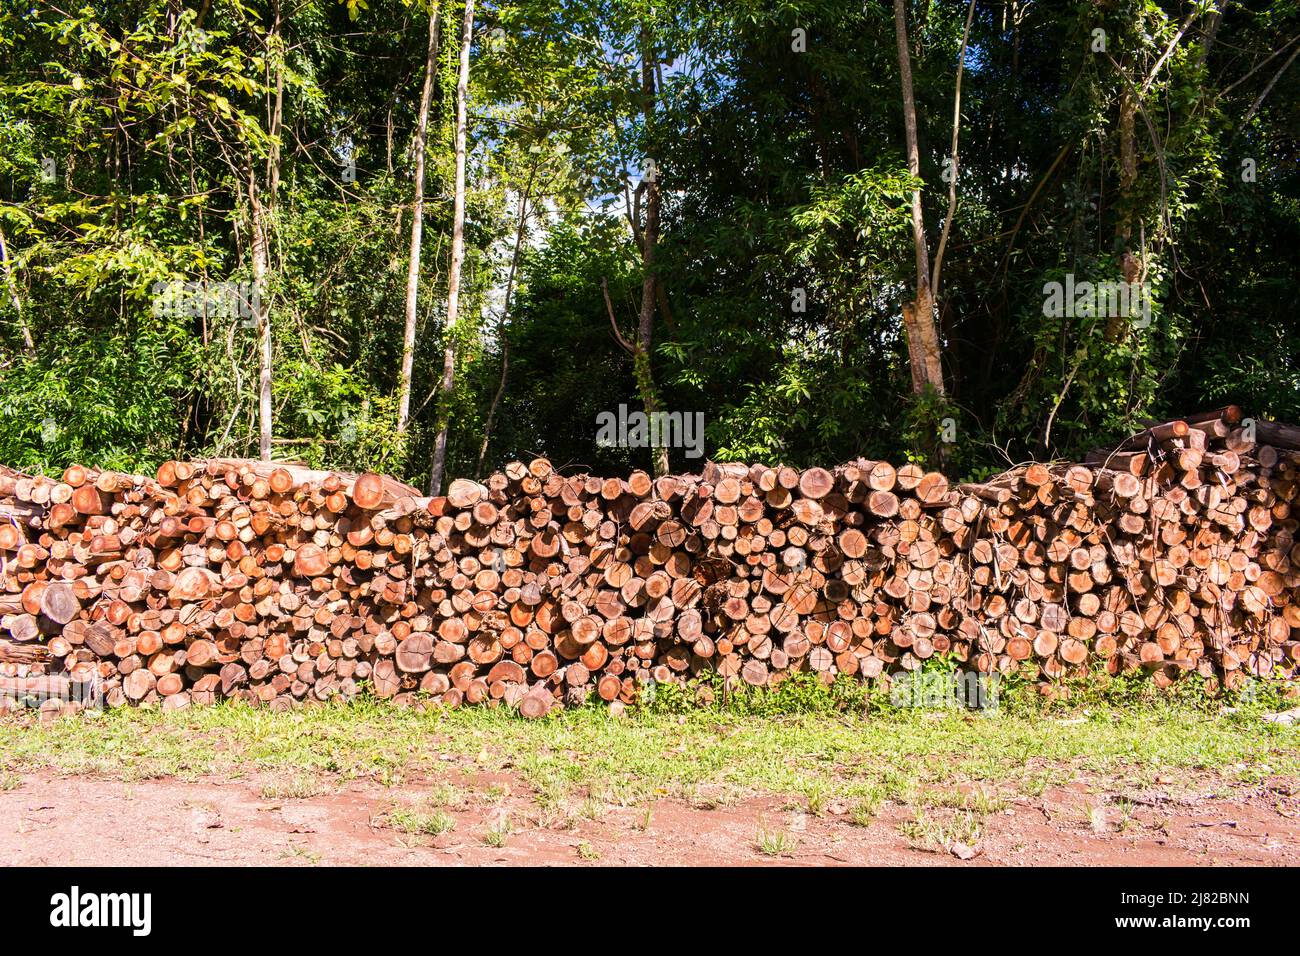 Holzstapel in der Landschaft von Tres Coroas, Rio Grande do Sul - Brasilien Stockfoto